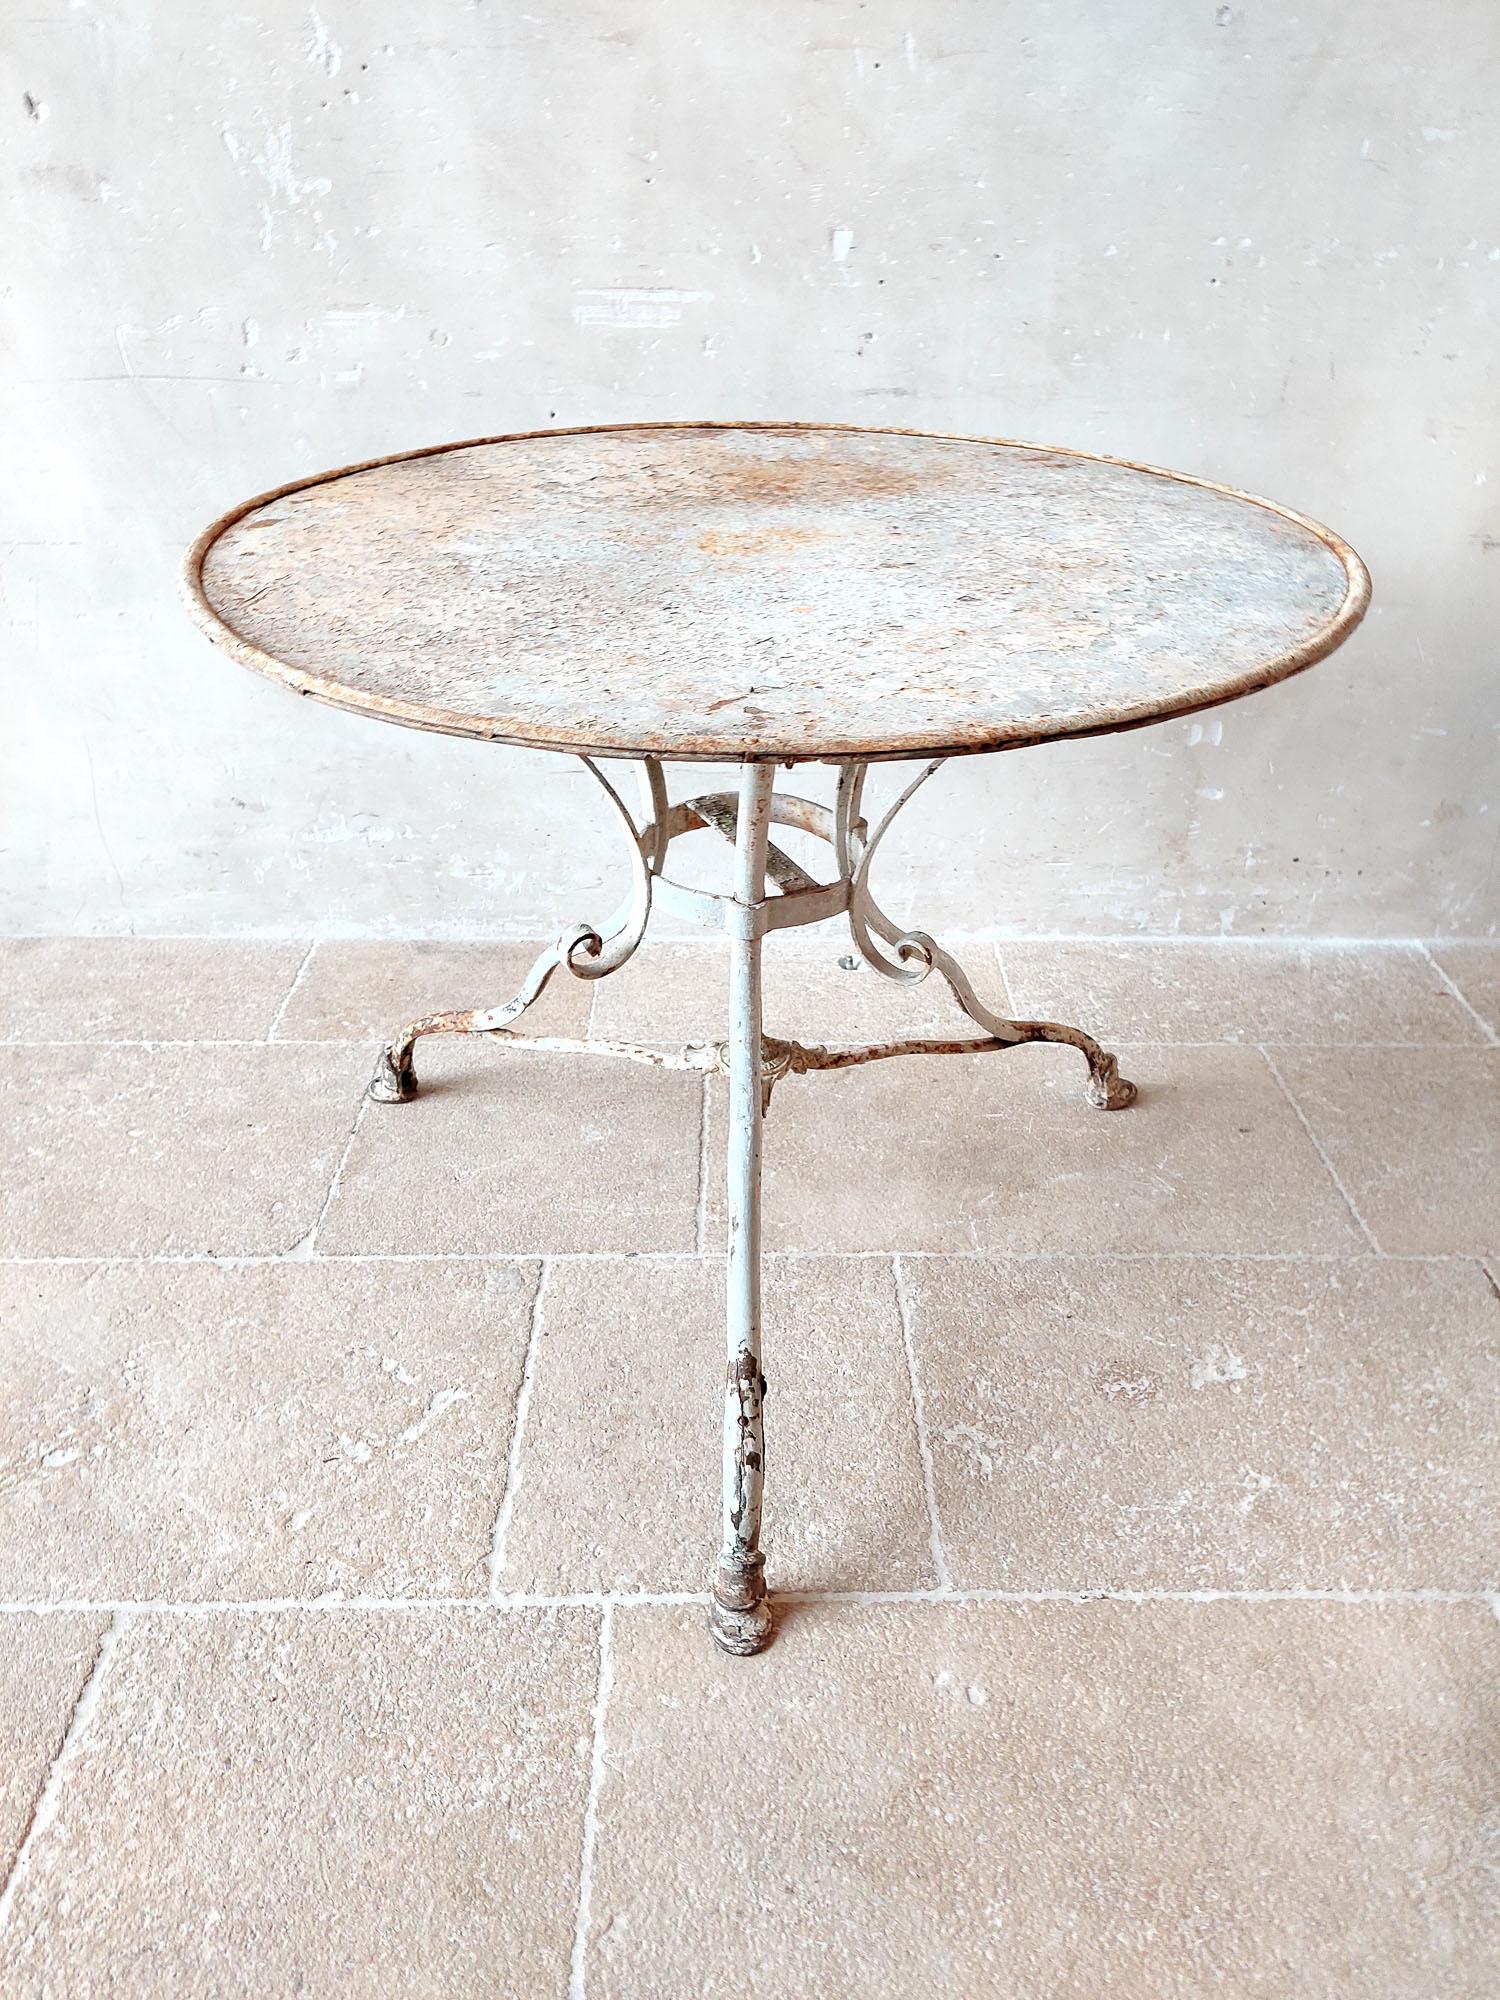 Ancienne table de jardin Grassin à Arras en fer forgé avec pieds en fonte, avec patine d'origine blanc-gris.

h 73 x diamètre 91,5 cm